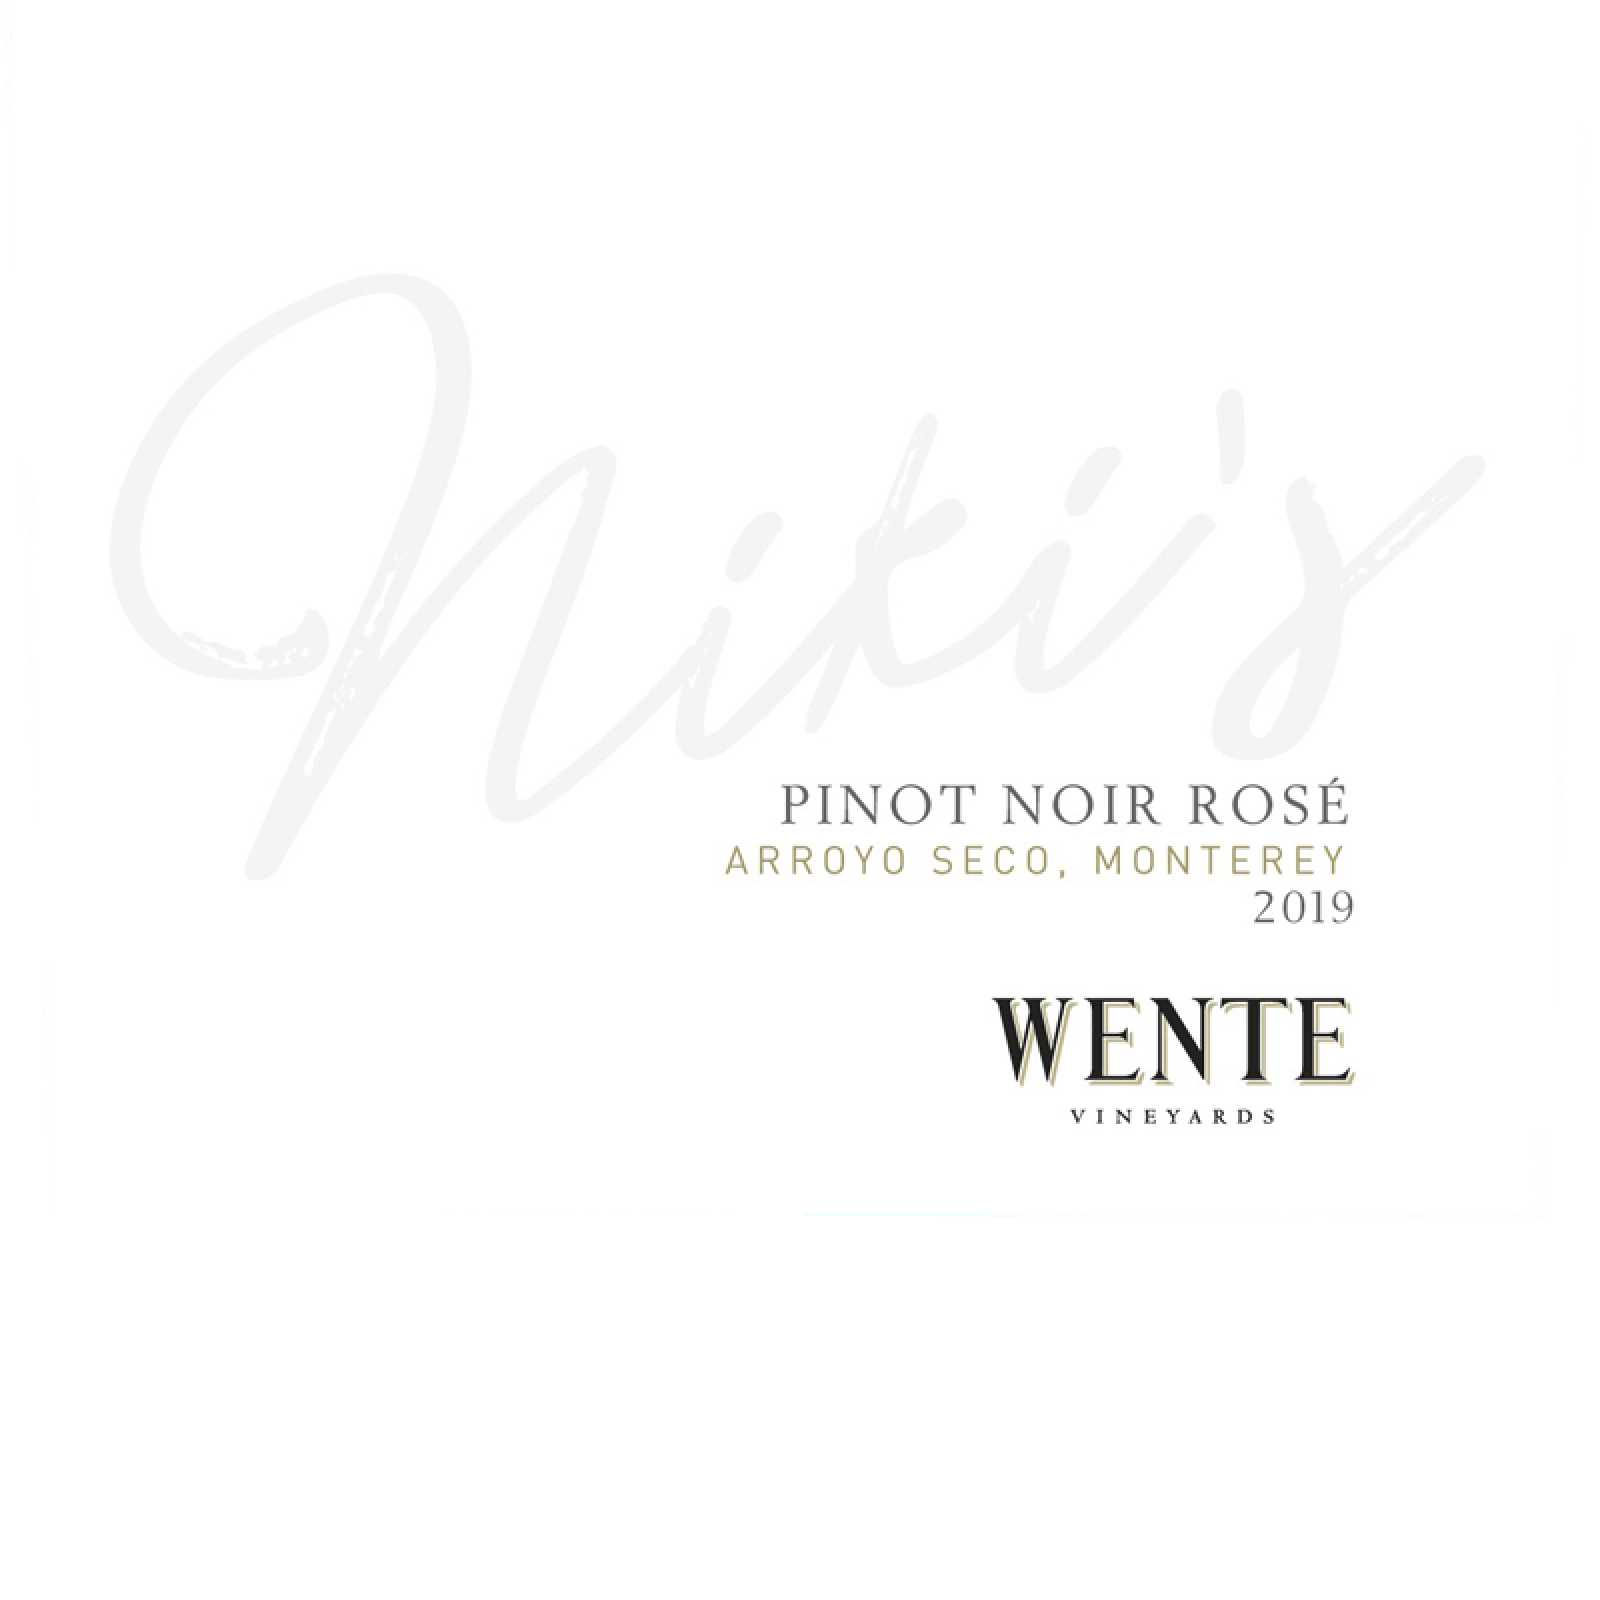 Wente Vineyards Niki's Pinot Noir Rose 2019